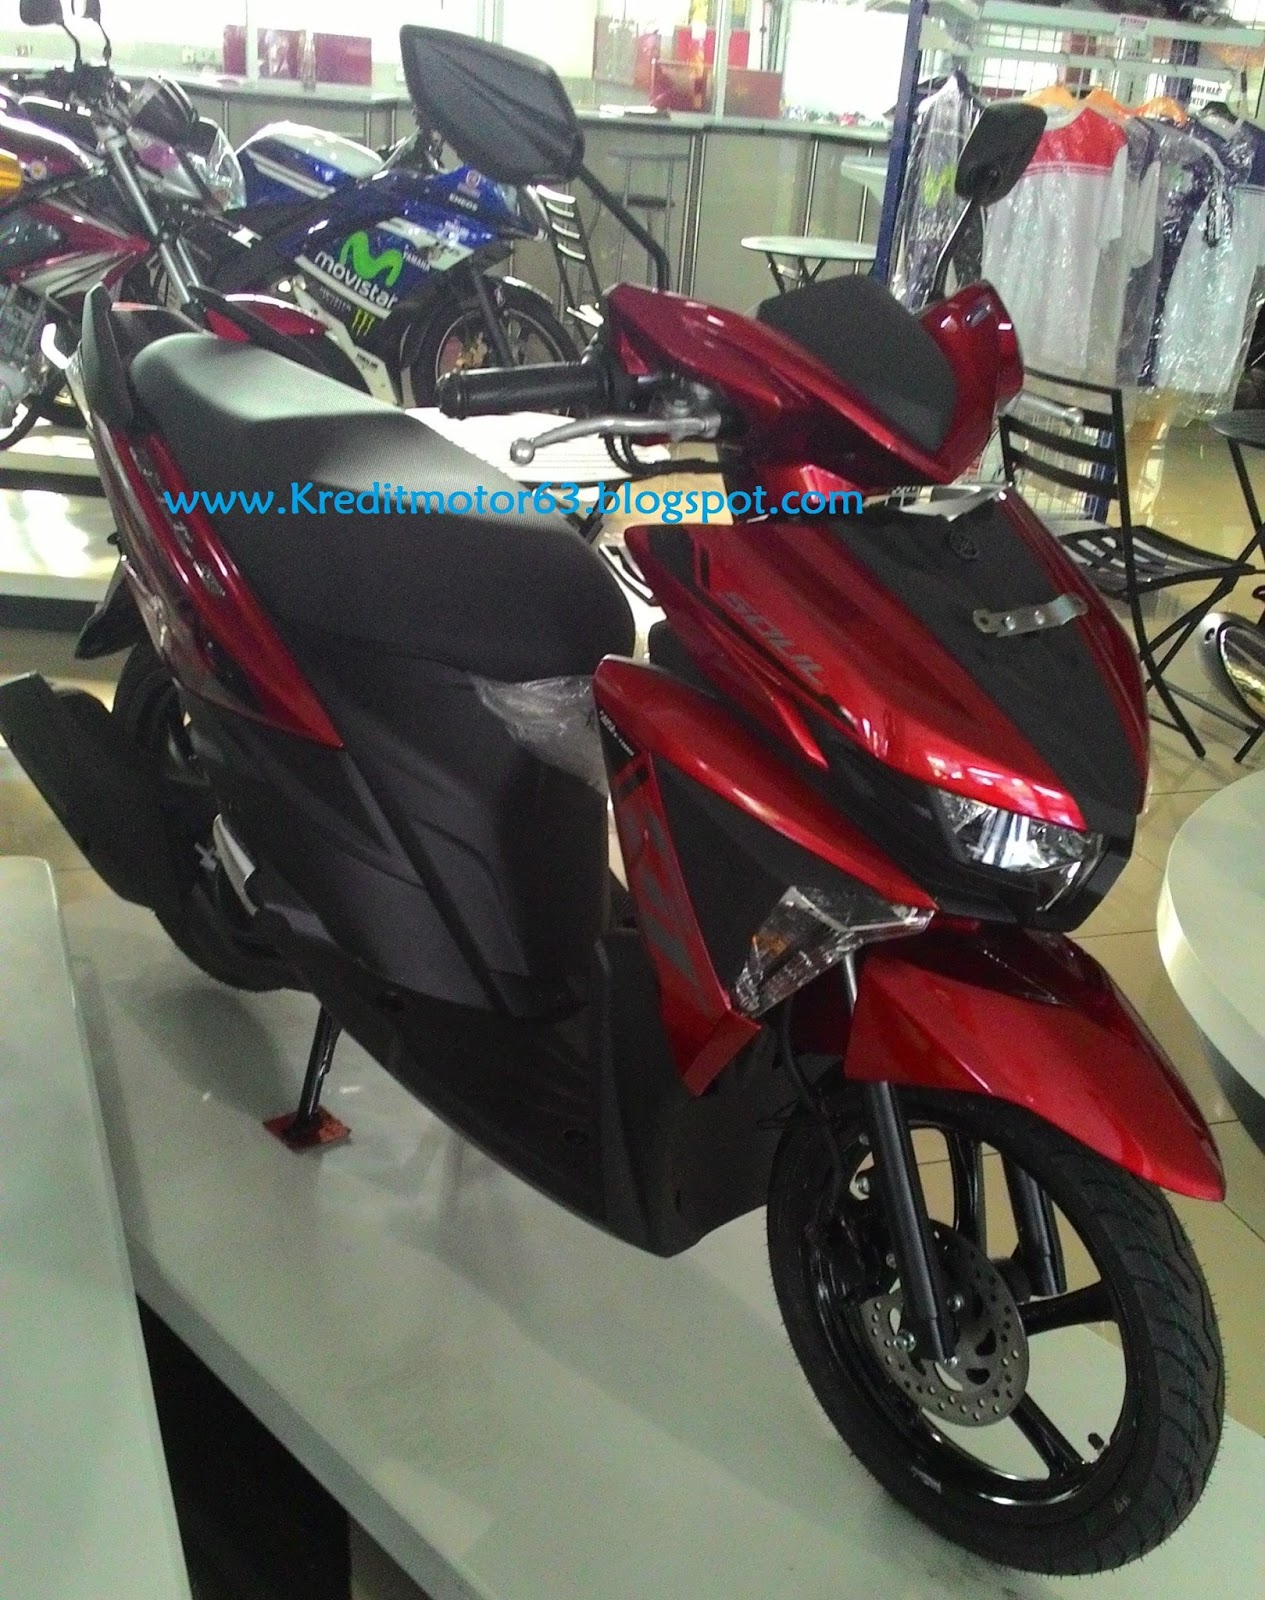 Gambar Sepeda Motor Yamaha Soul Gt Terupdate Gentong Modifikasi